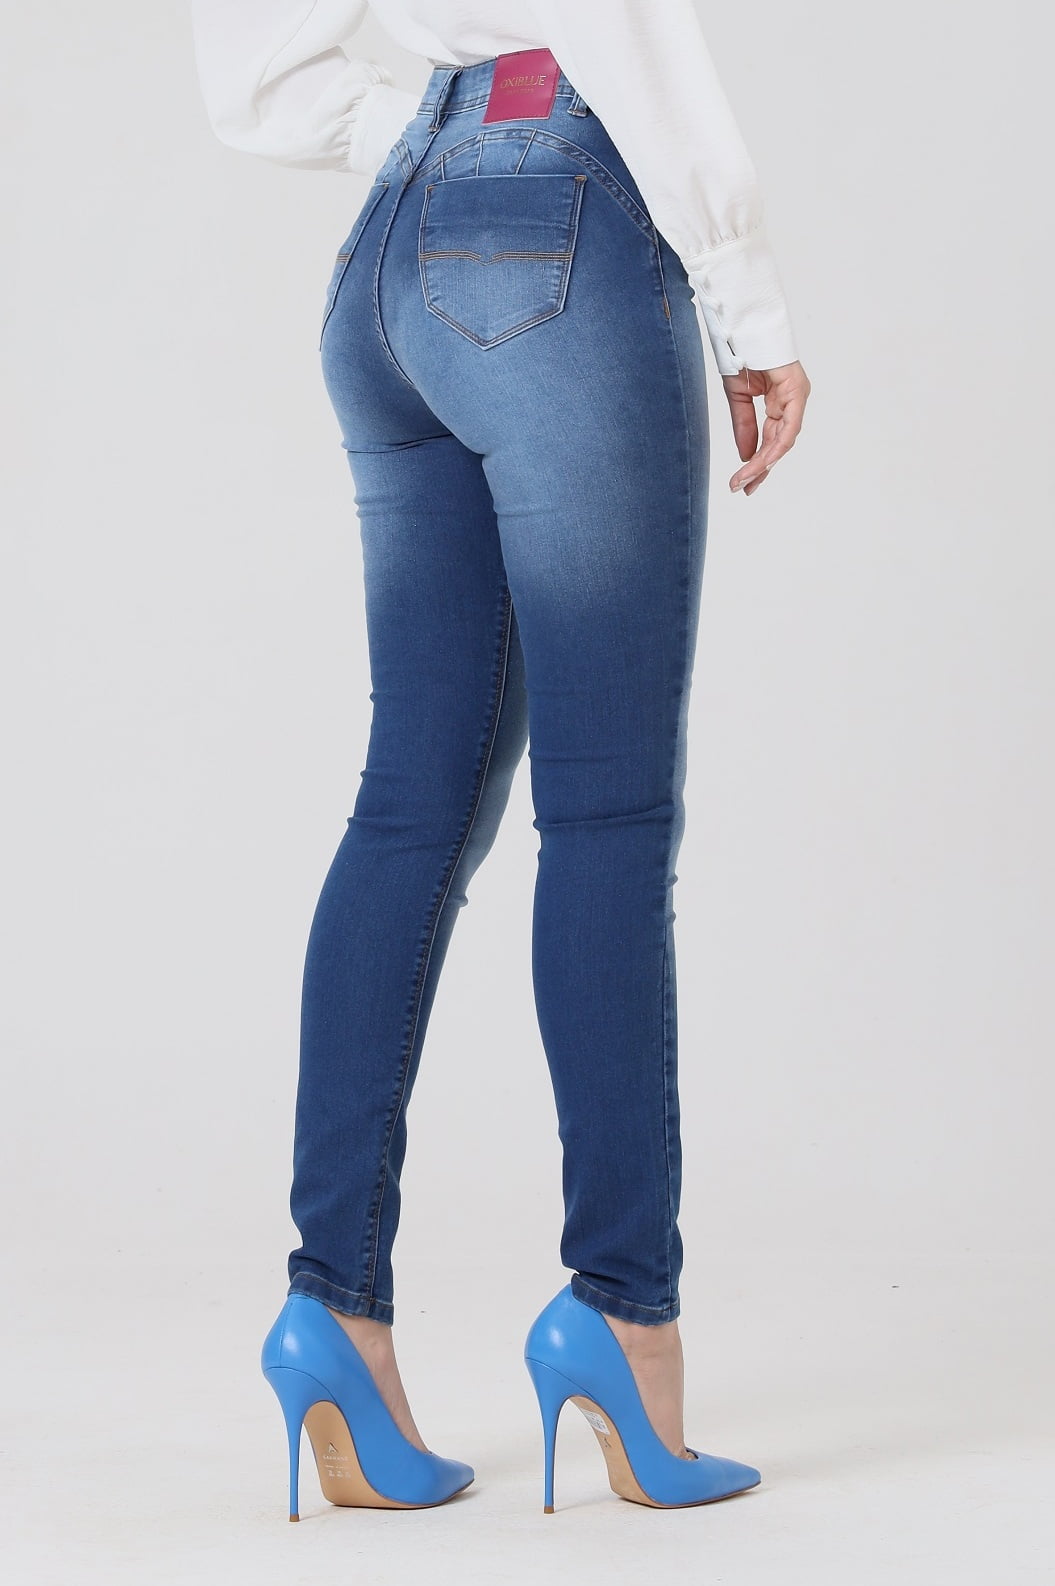 Calça Jeans Feminina Skinny Push Up Azul claro F2856 - Oxiblue Jeans